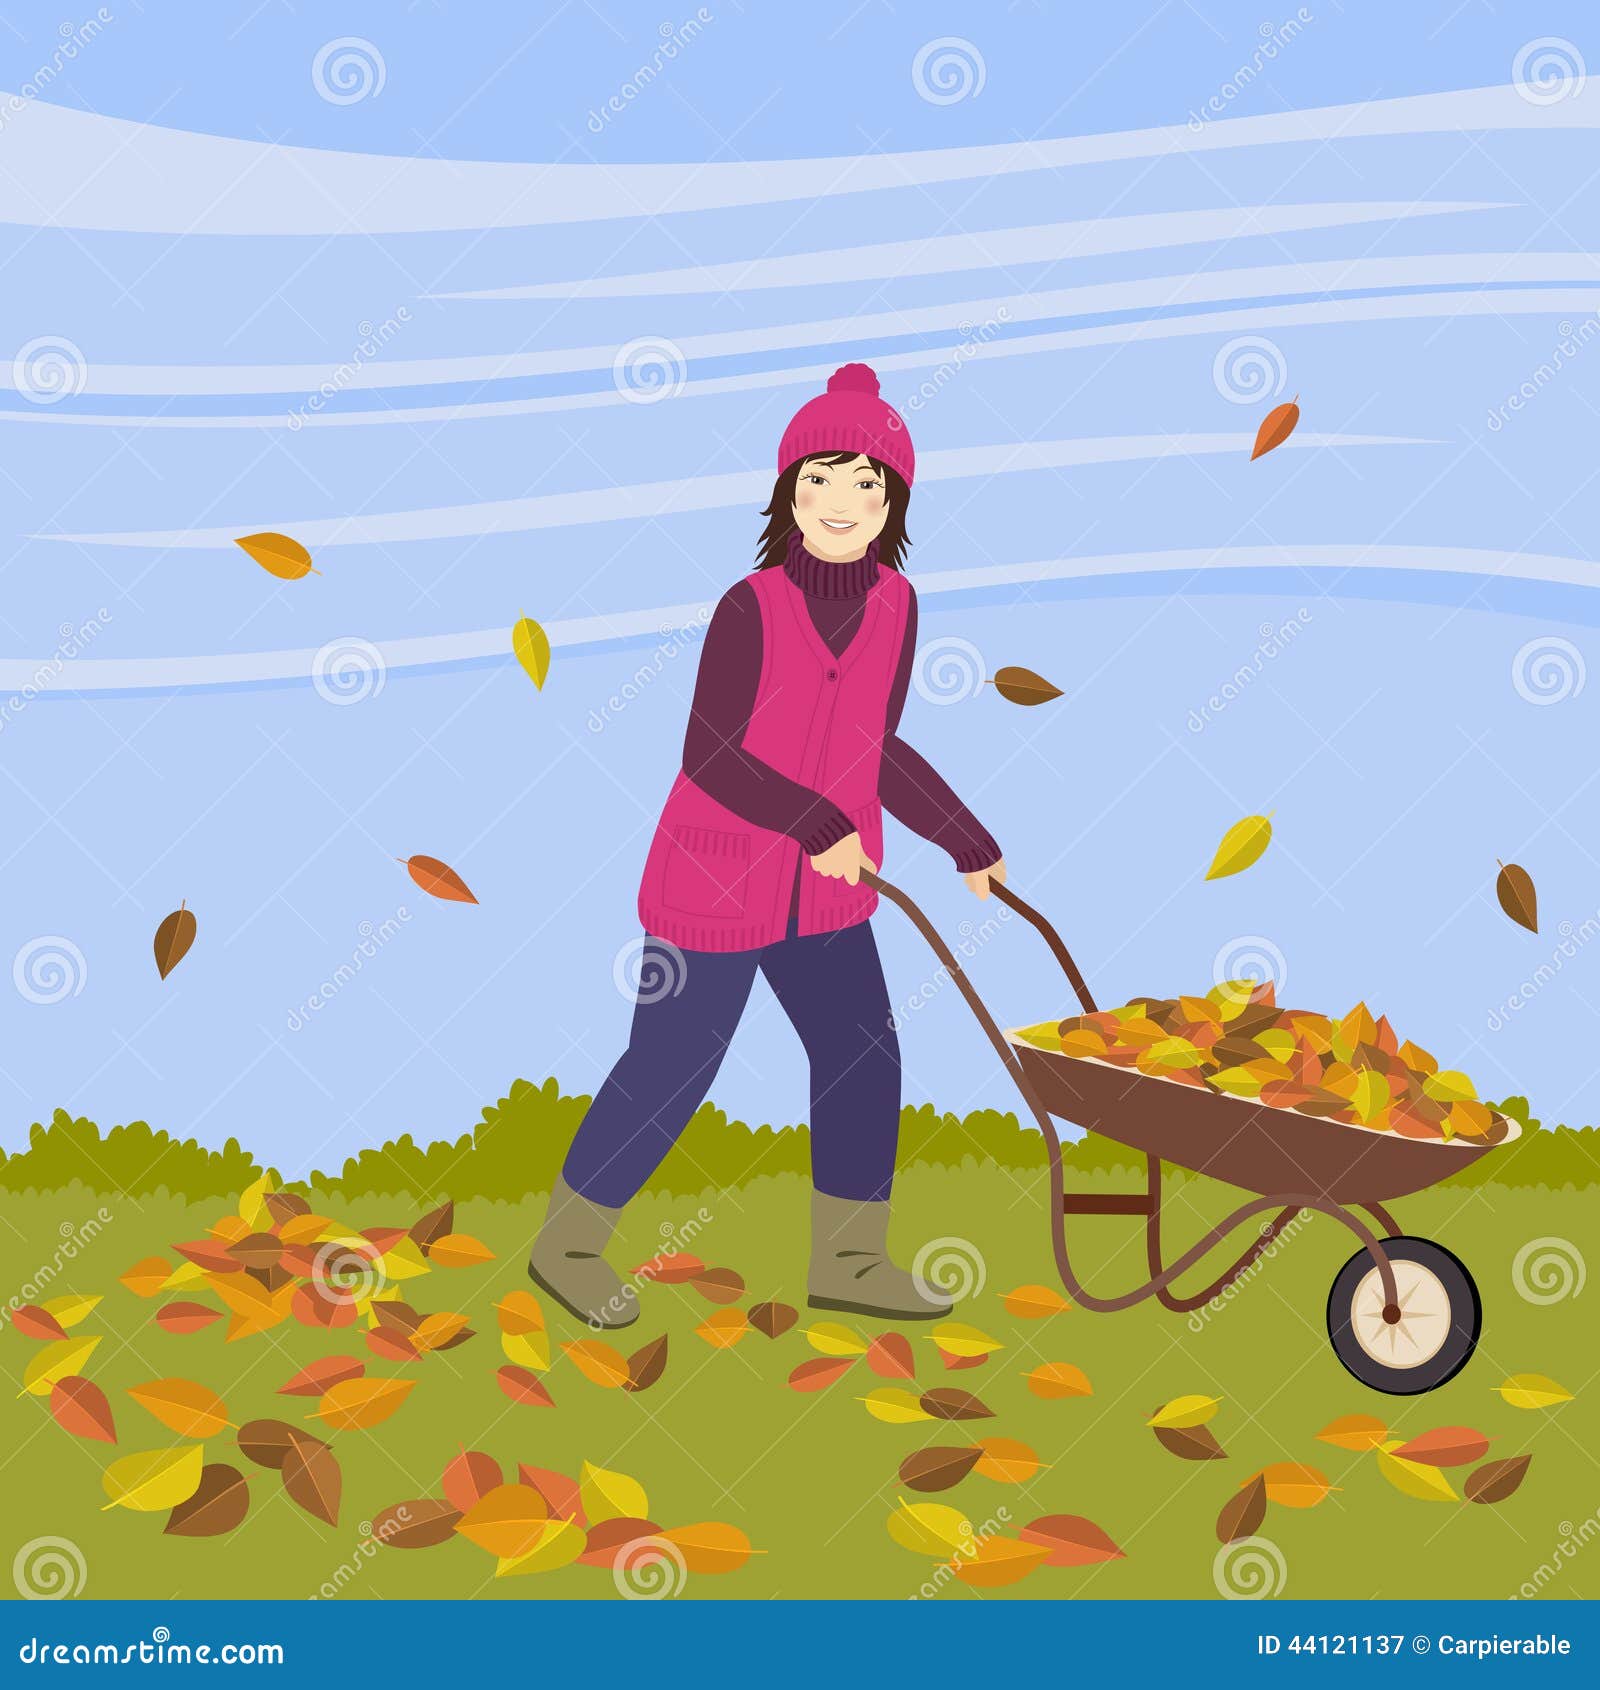 Autumn works stock vector. Illustration of work, season - 44121137